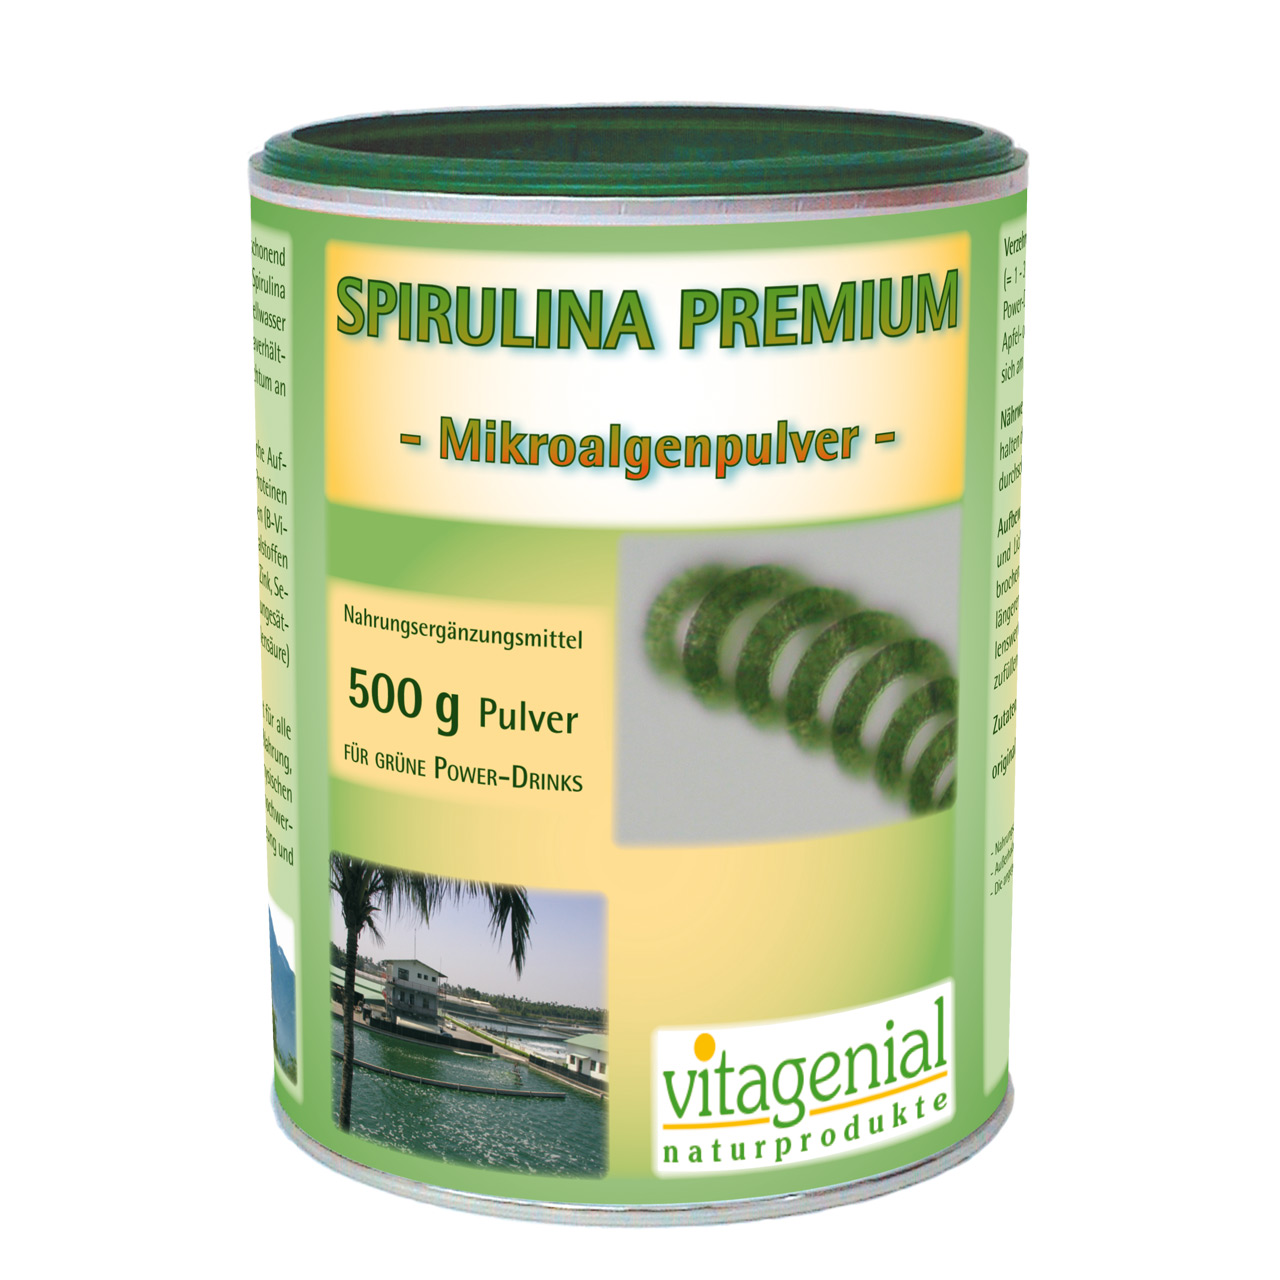 Vitagenial Spirulina Premium Mikroalgenpulver als 500 Gramm Pulver